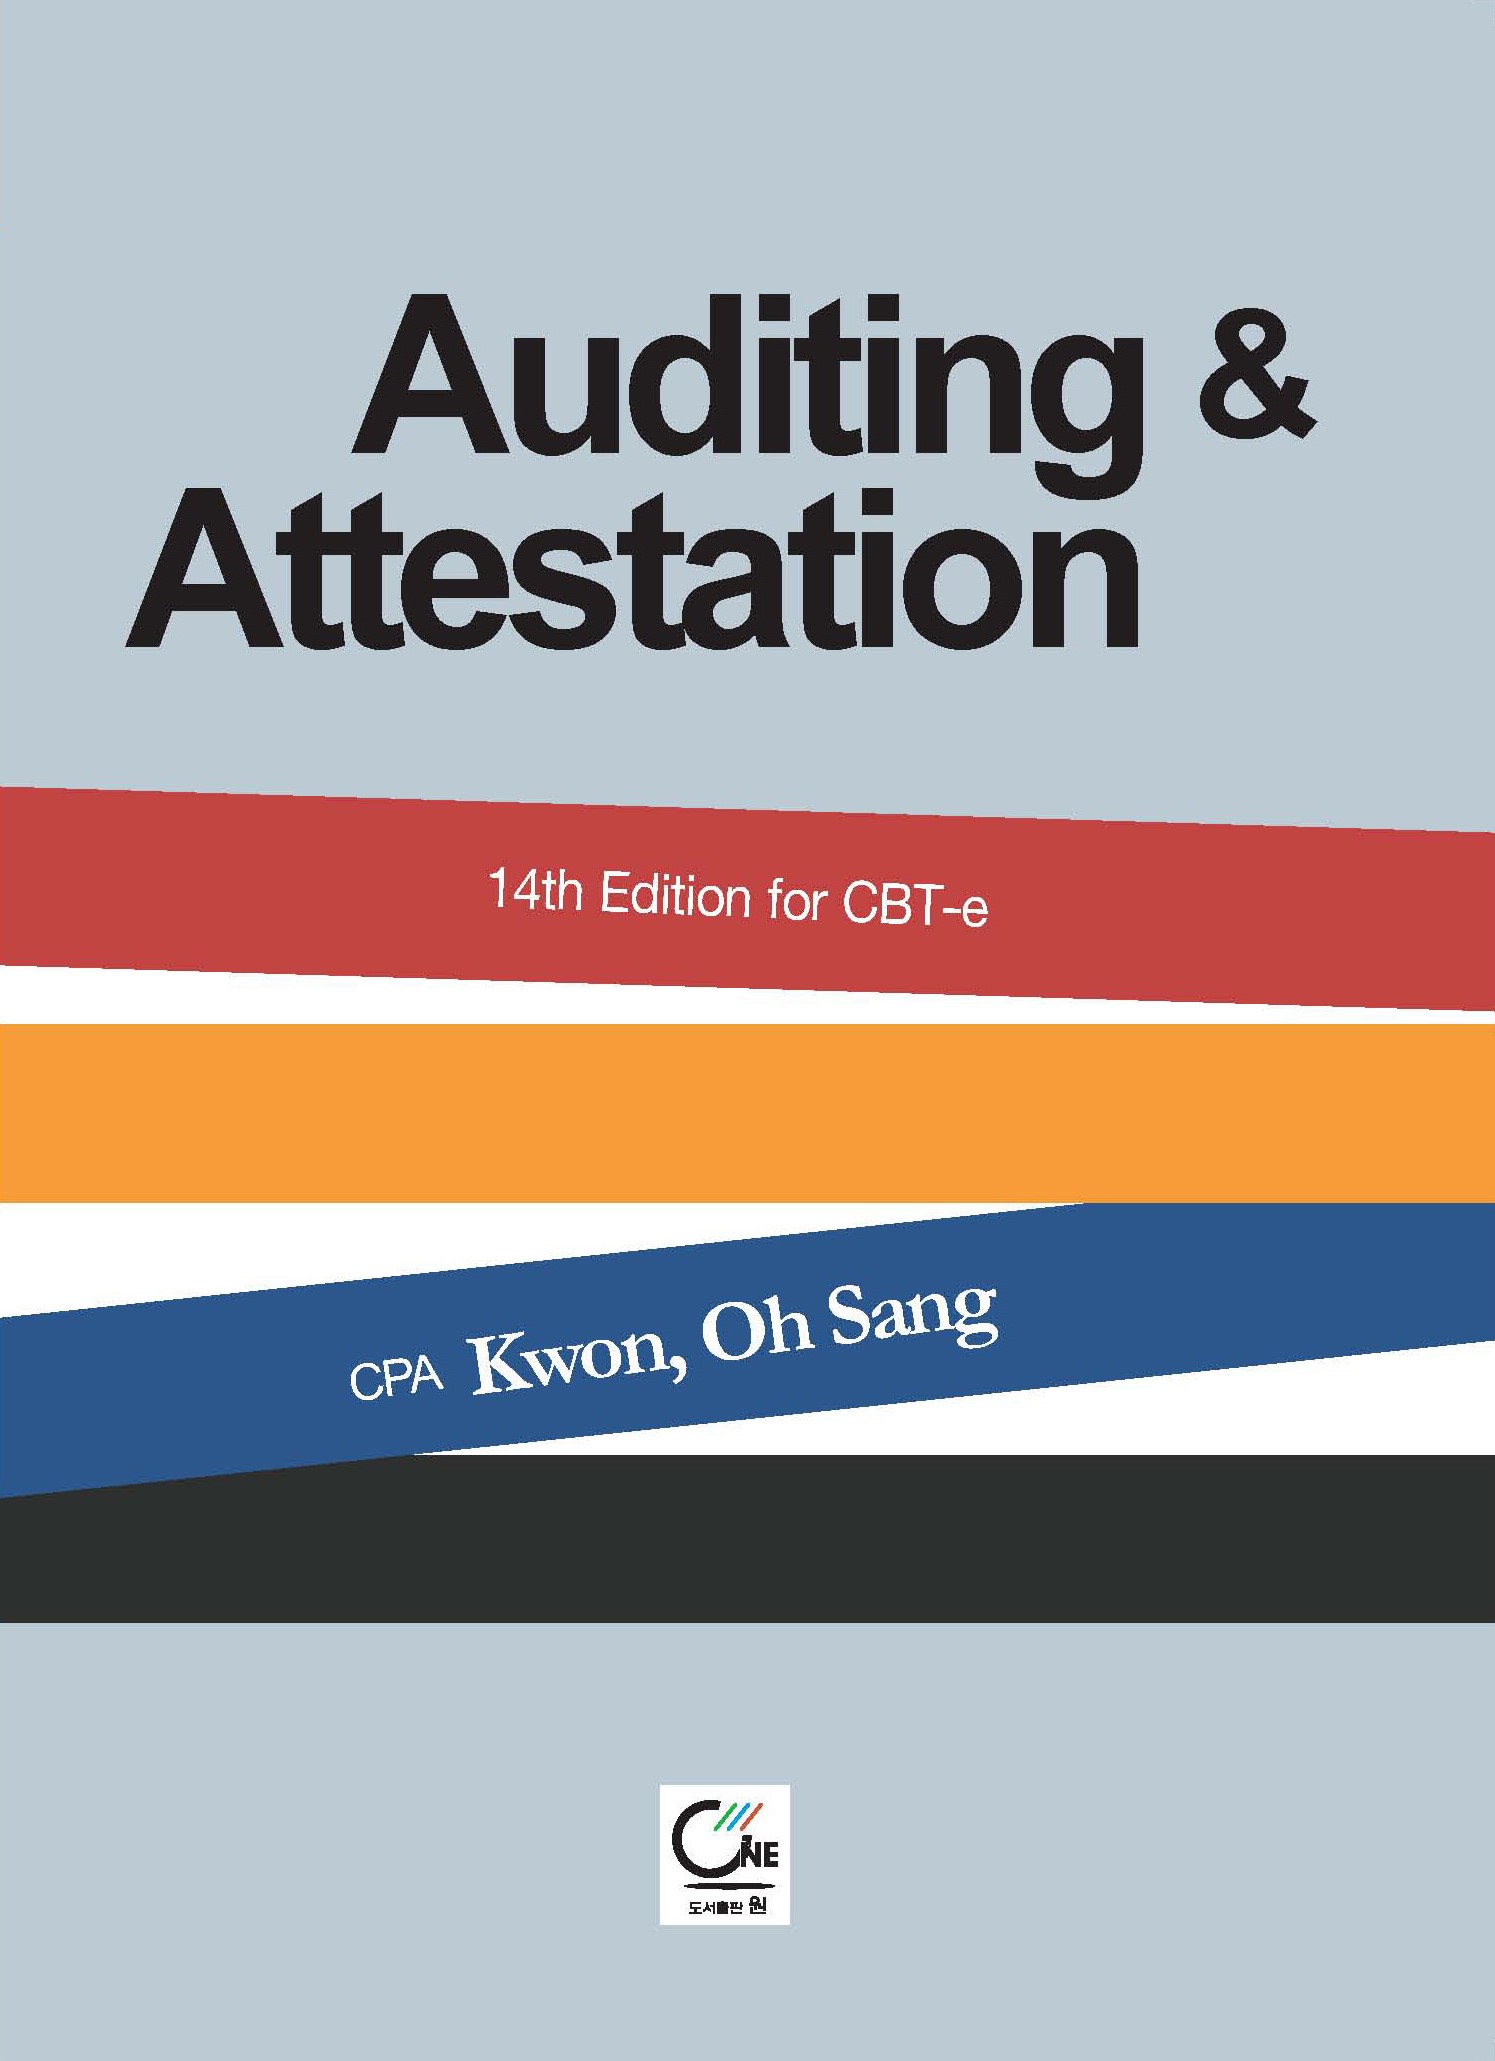 [2022년도 강의] Auditing & Attestation 14th edition for CBT-e [권오상CPA]